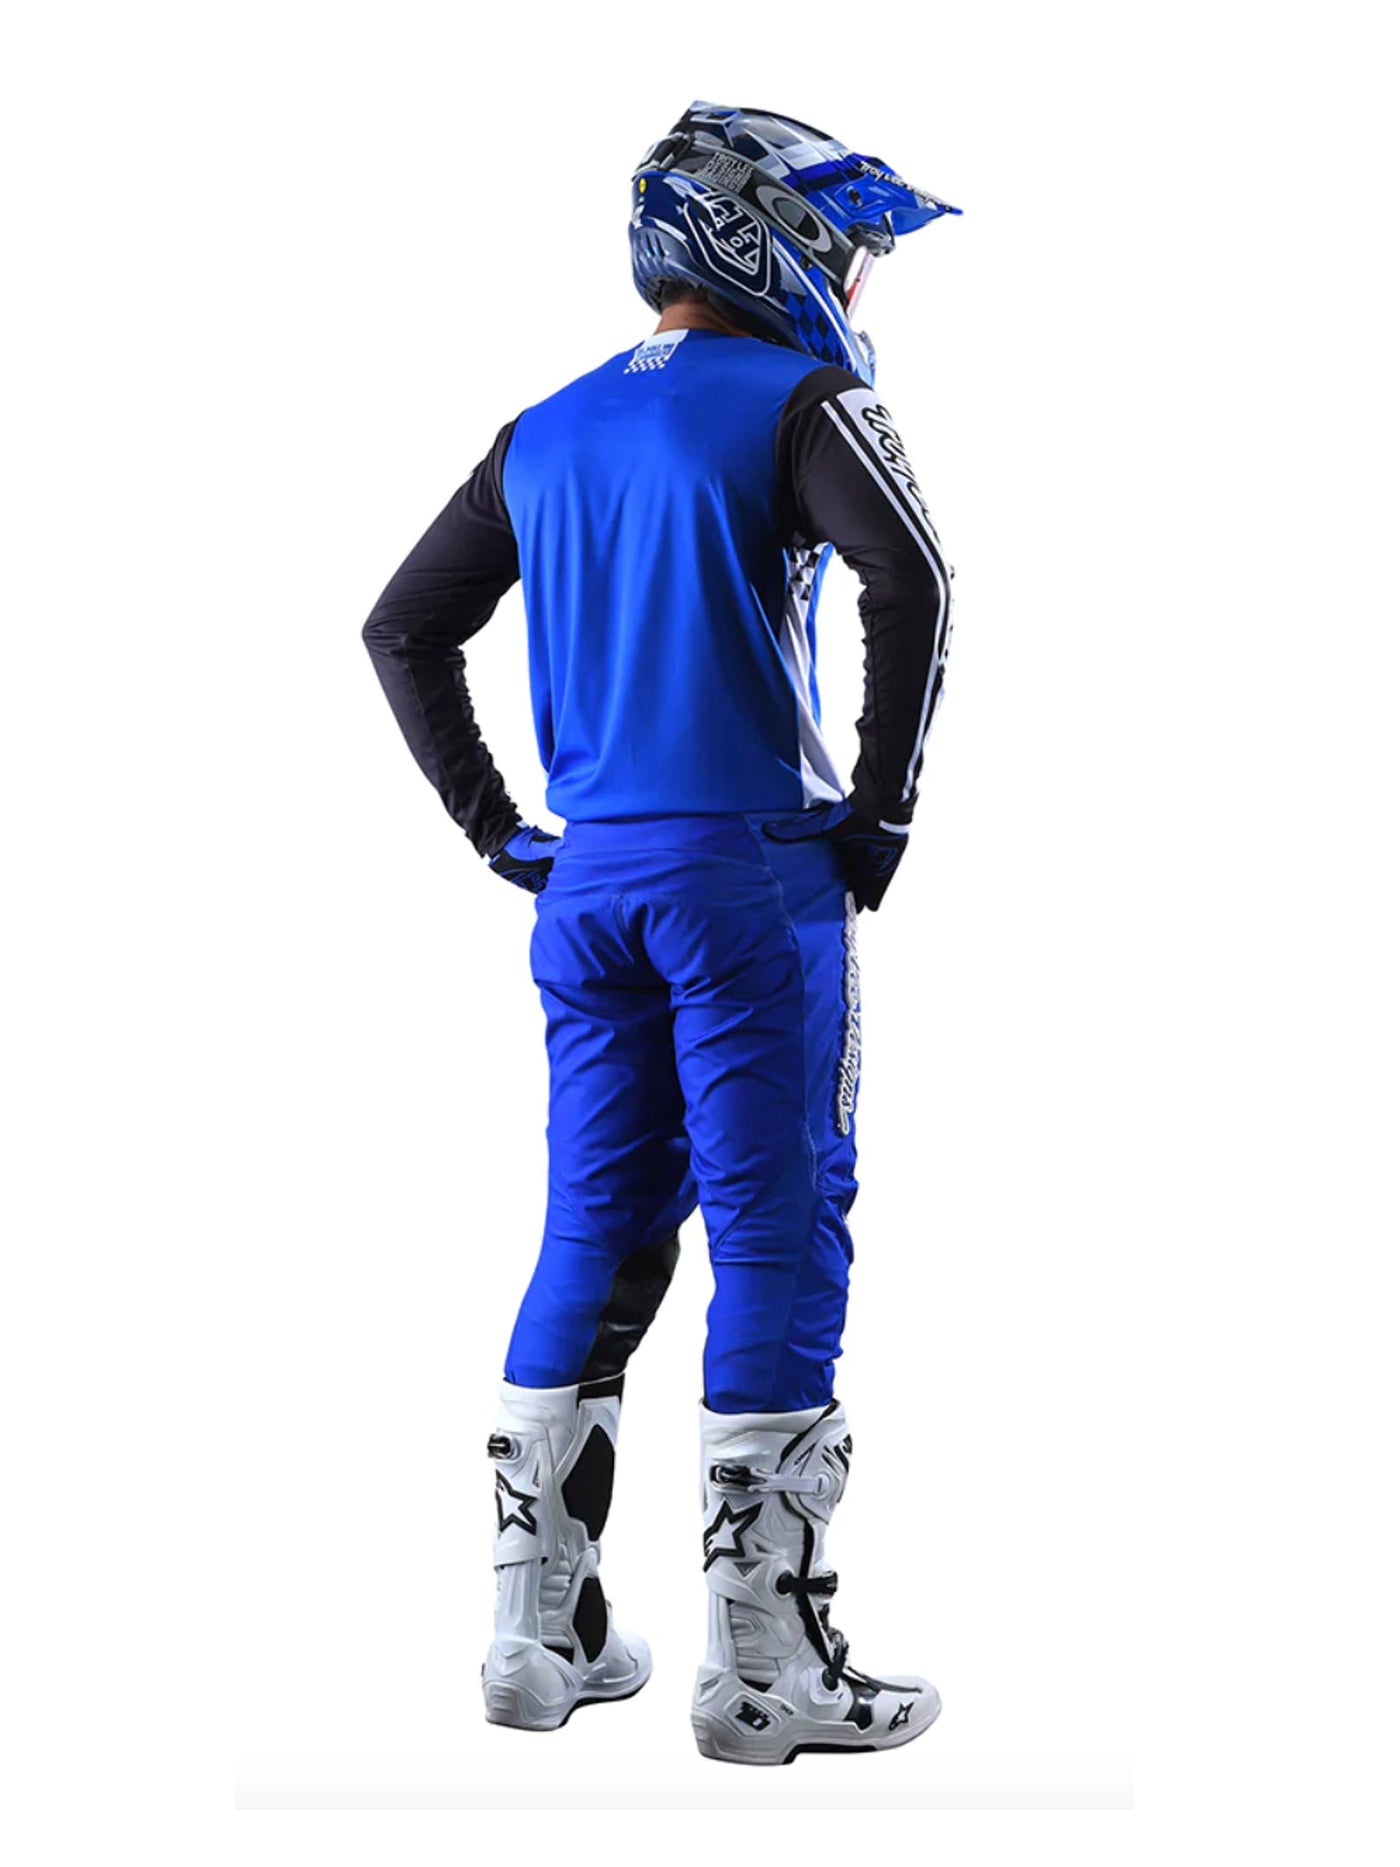 Polera Troy Lee Designs GP race 81 azul - procircuitcl